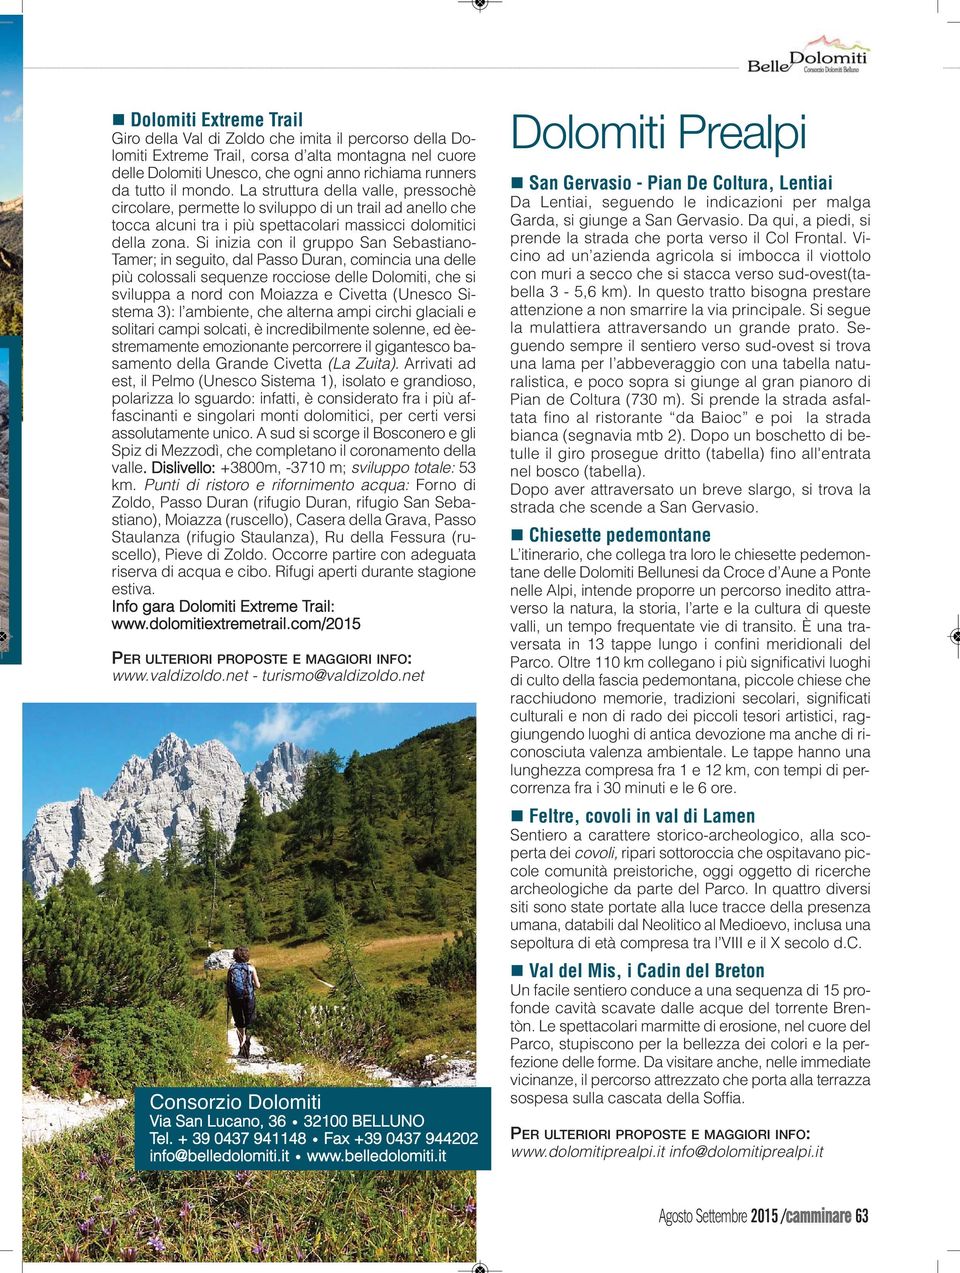 Si inizia con il gruppo San Sebastiano- Tamer; in seguito, dal Passo Duran, comincia una delle più colossali sequenze rocciose delle Dolomiti, che si sviluppa a nord con Moiazza e Civetta (Unesco